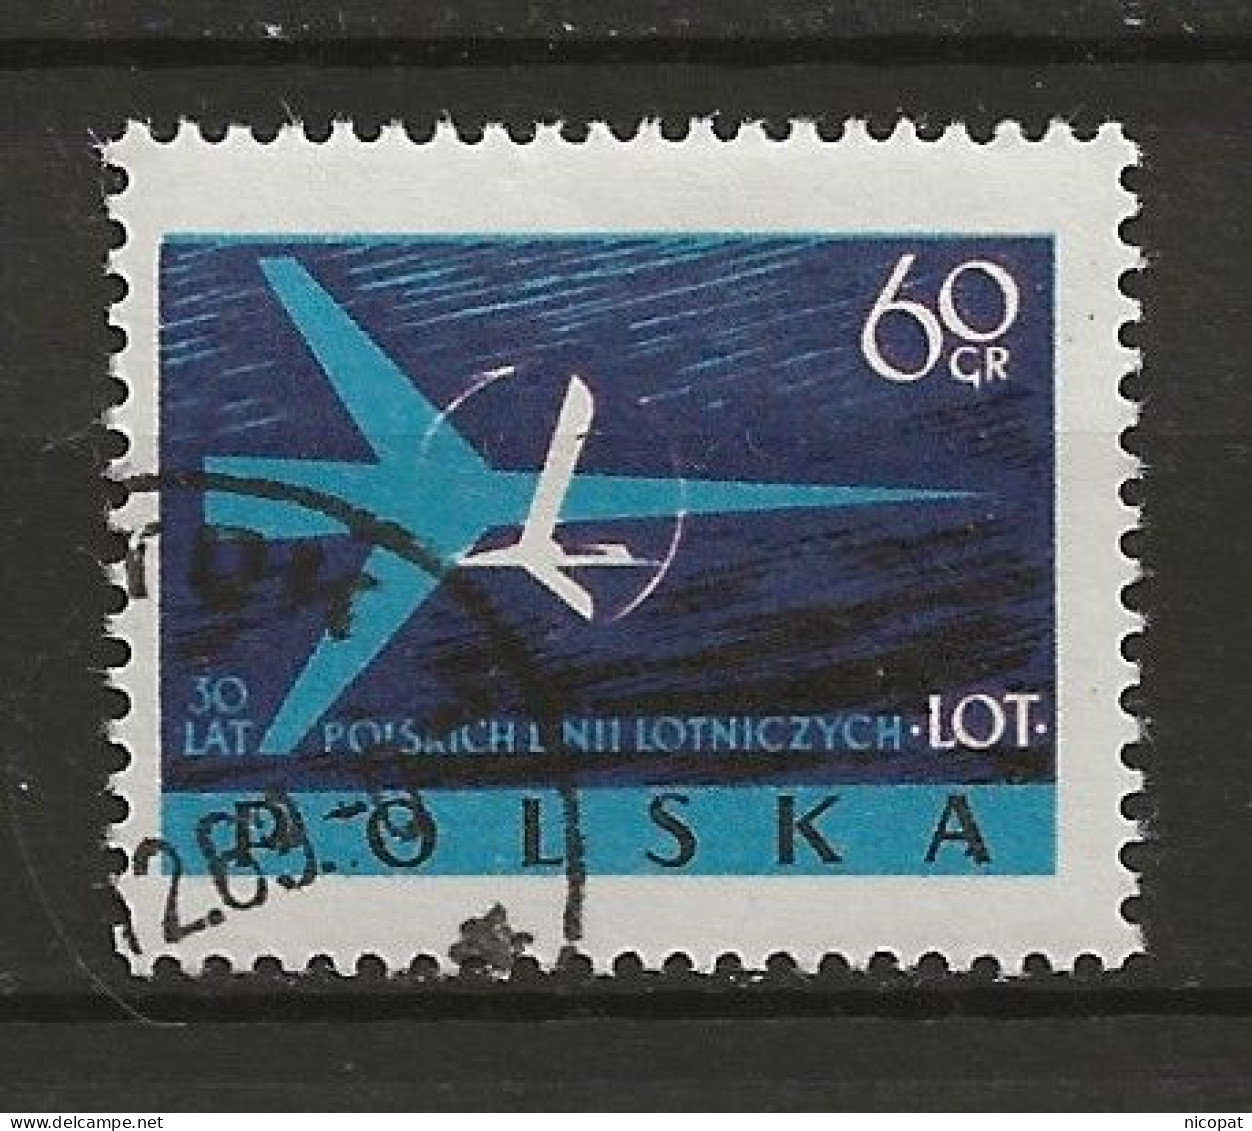 POLAND Oblitéré 980 Anniversaire De La Compagnie Aérienne LOT Avion Aviation - Used Stamps